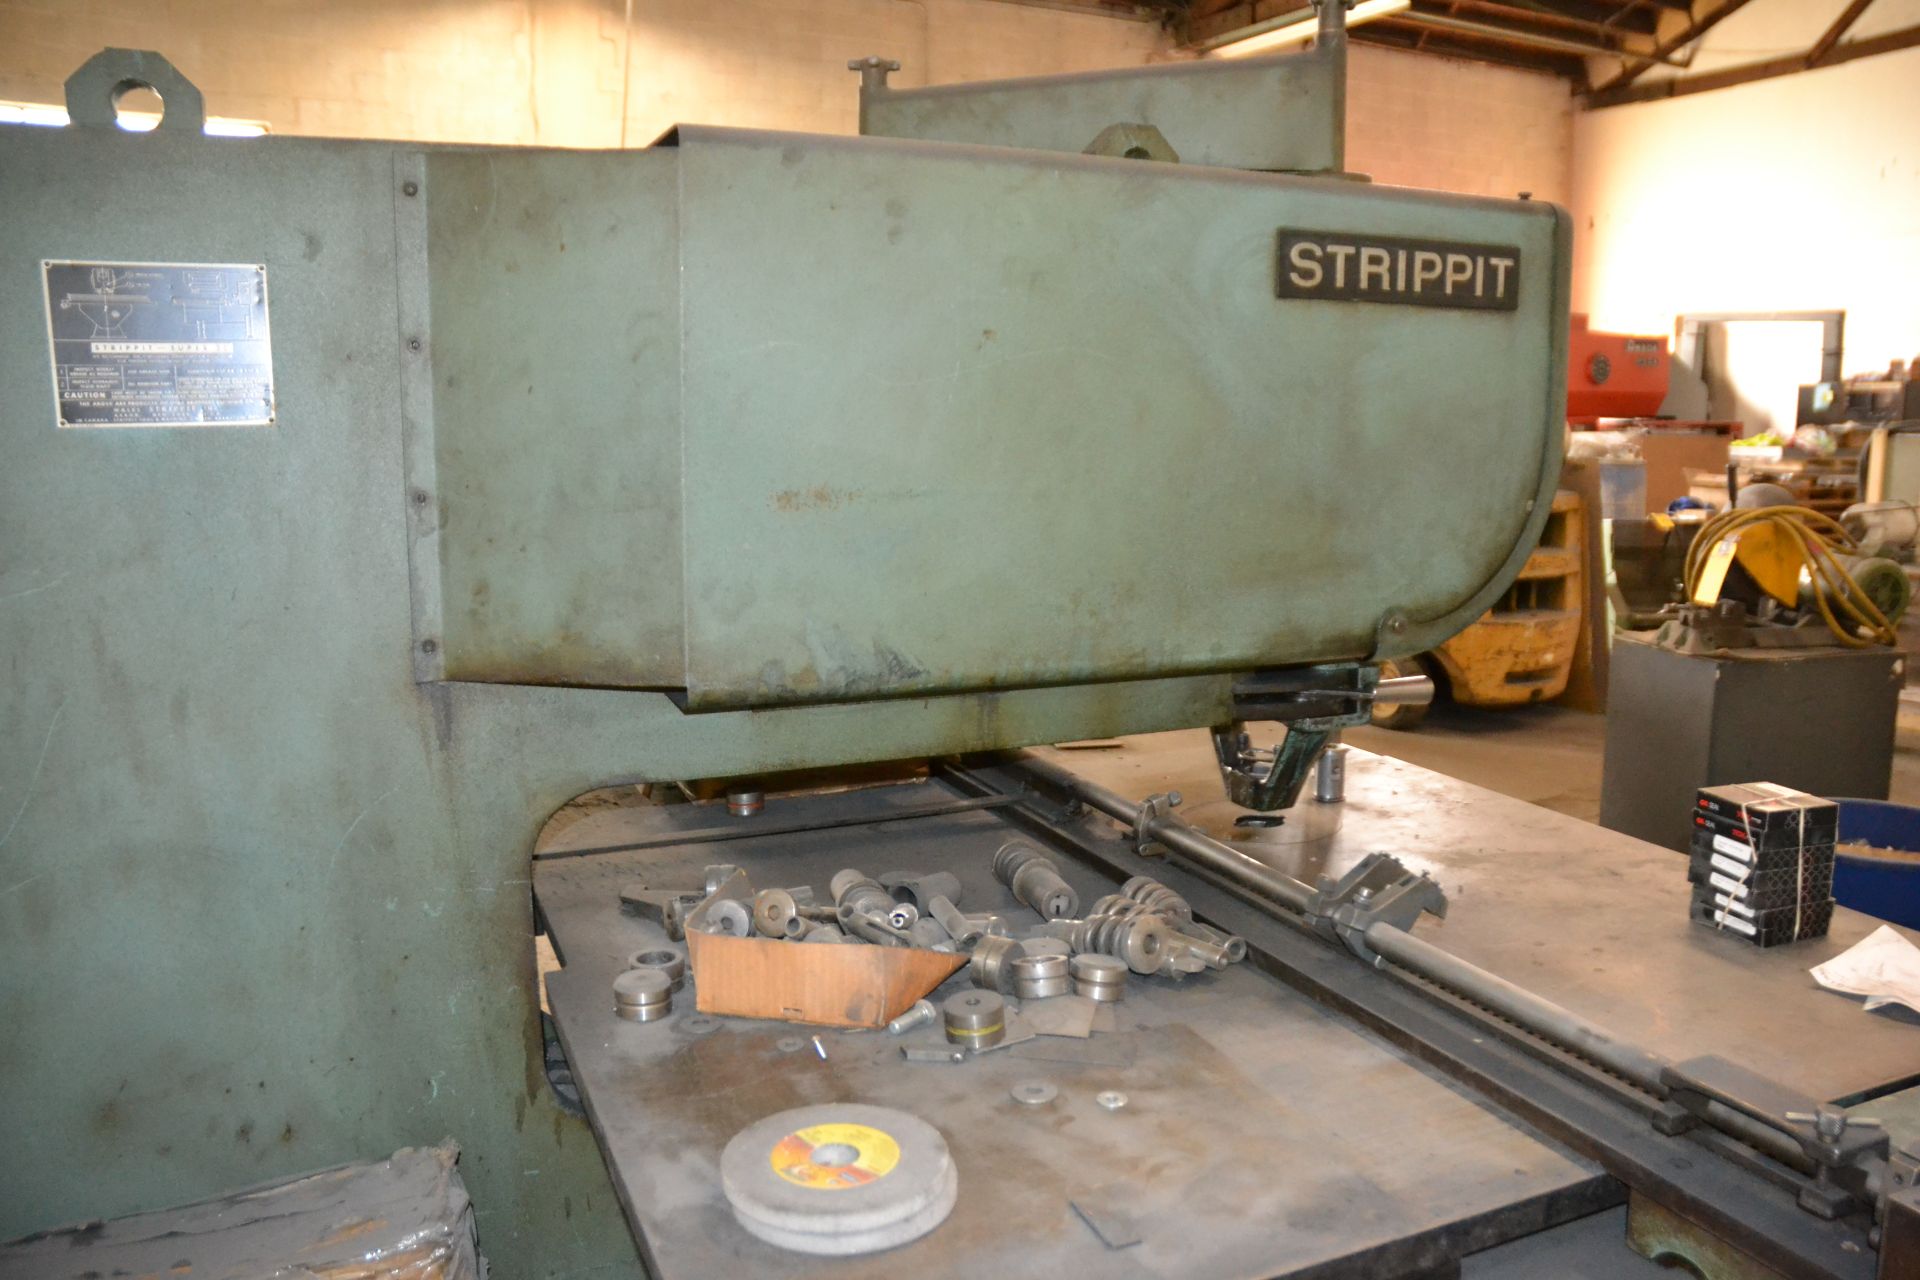 Strippit Super 30 Sheet Metal Fabrication Press, SN: 40282864 - Image 2 of 3